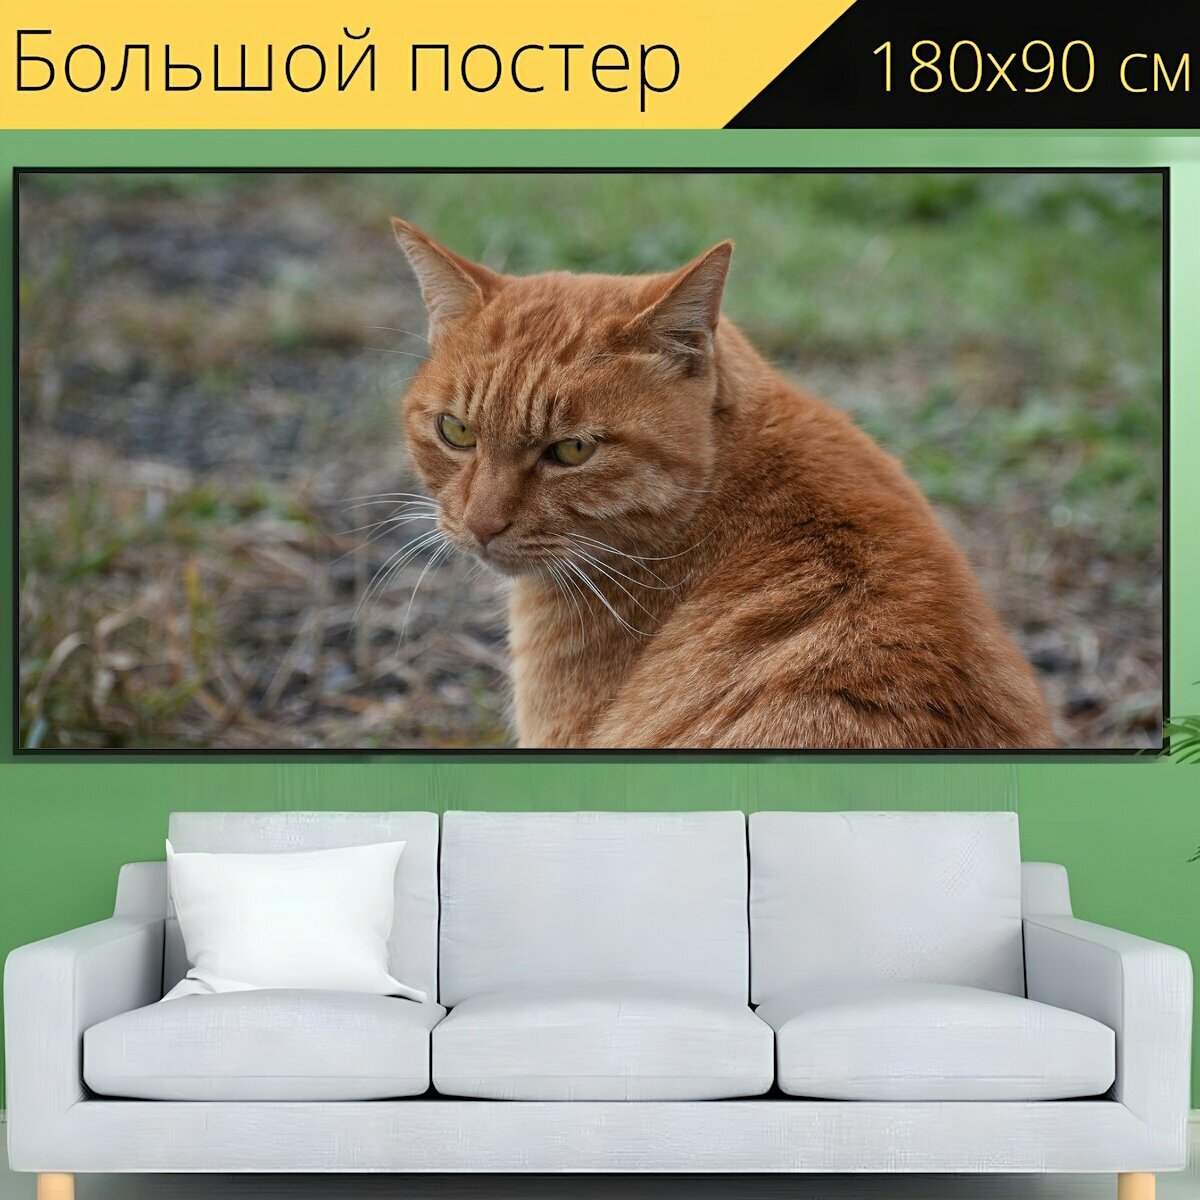 Большой постер "Животное, кошка, глаз" 180 x 90 см. для интерьера